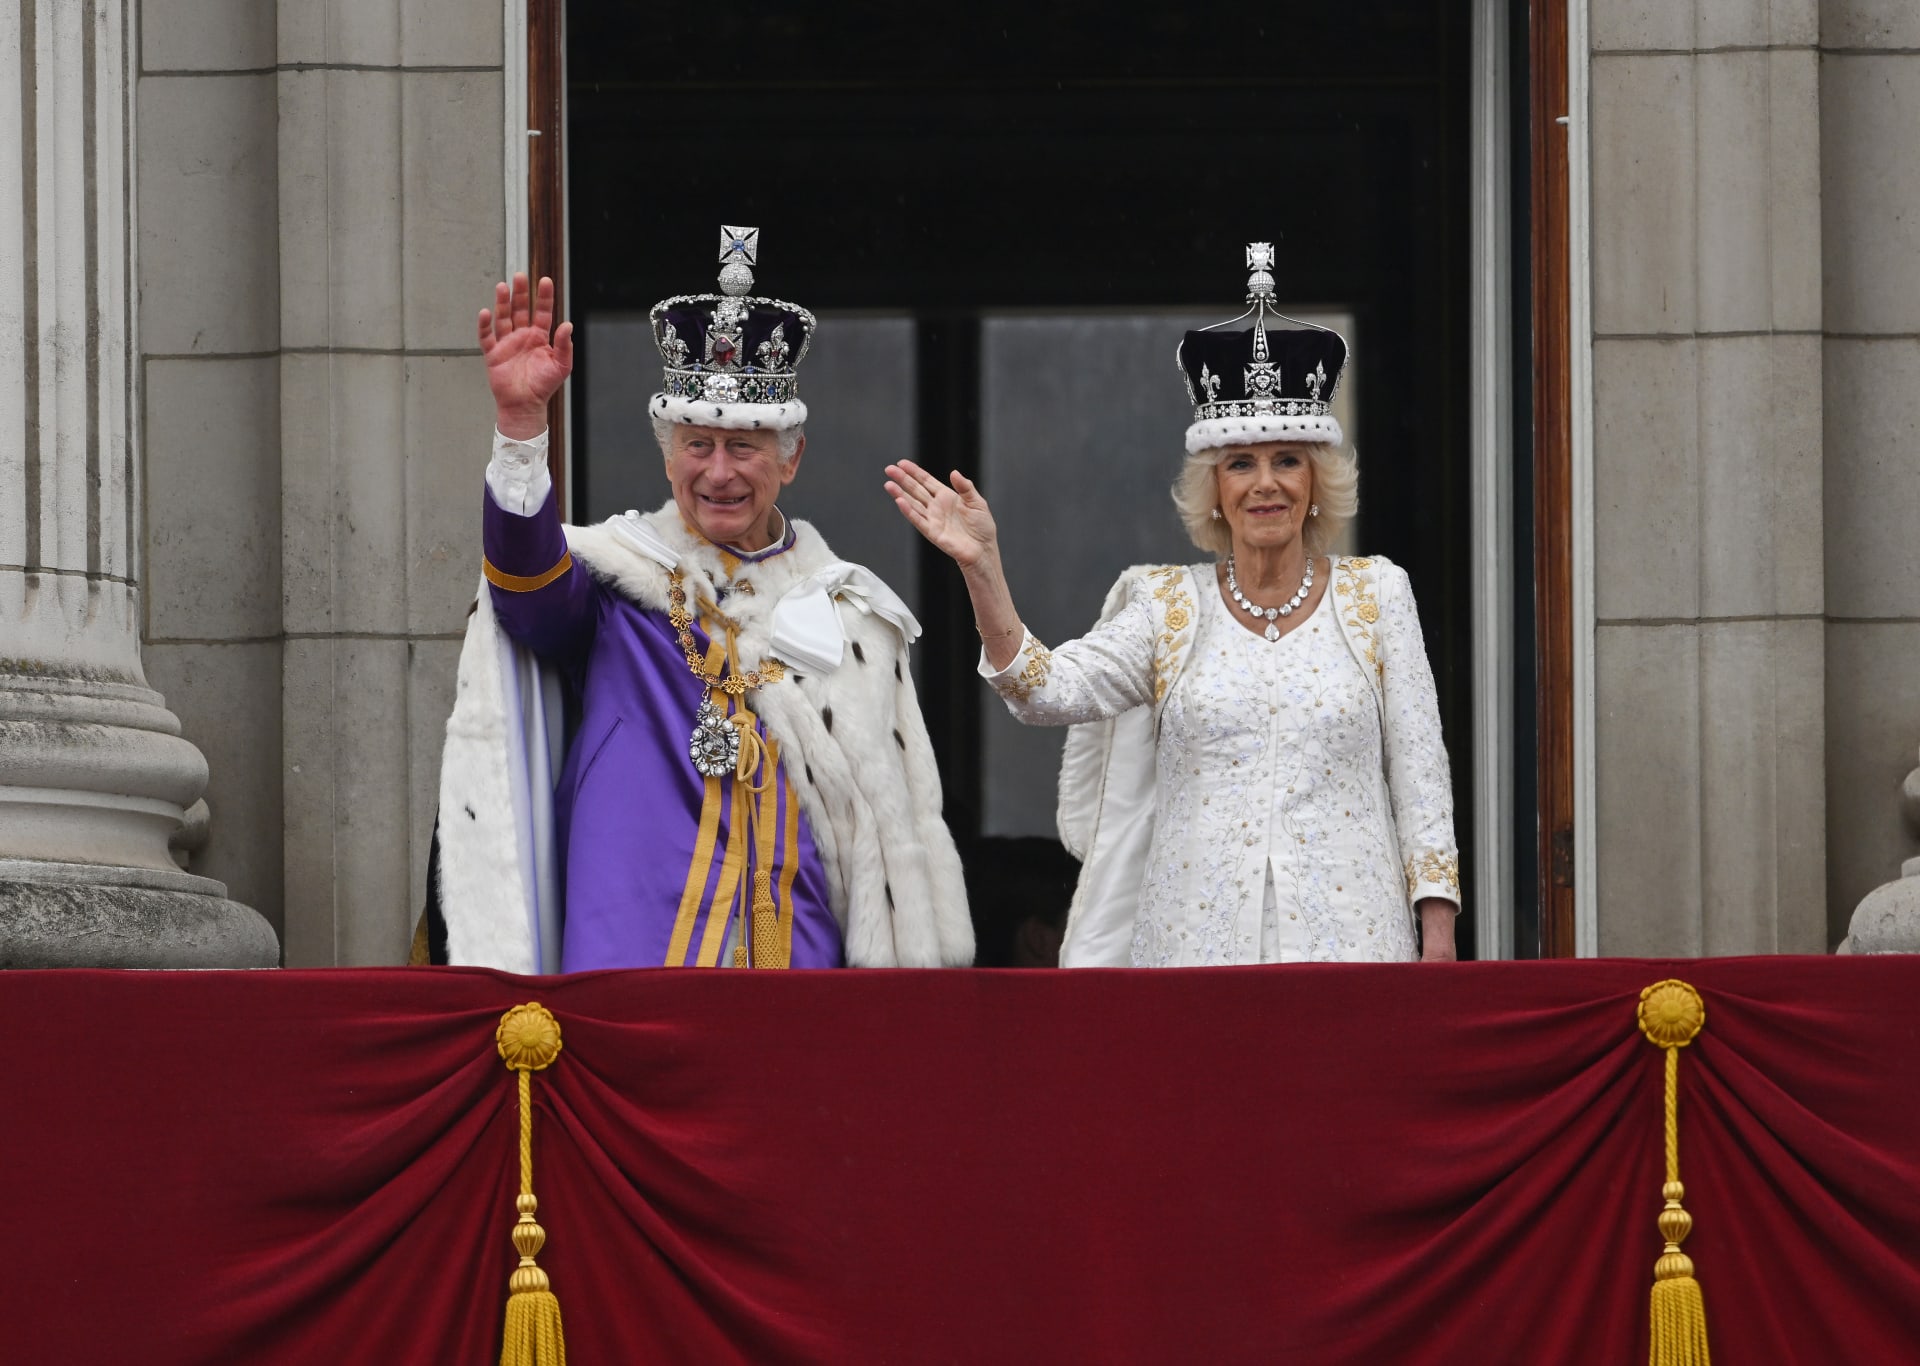 الملك تشارلز والملكة كاميلا يحيون الحشود خارج قصر باكنغهام